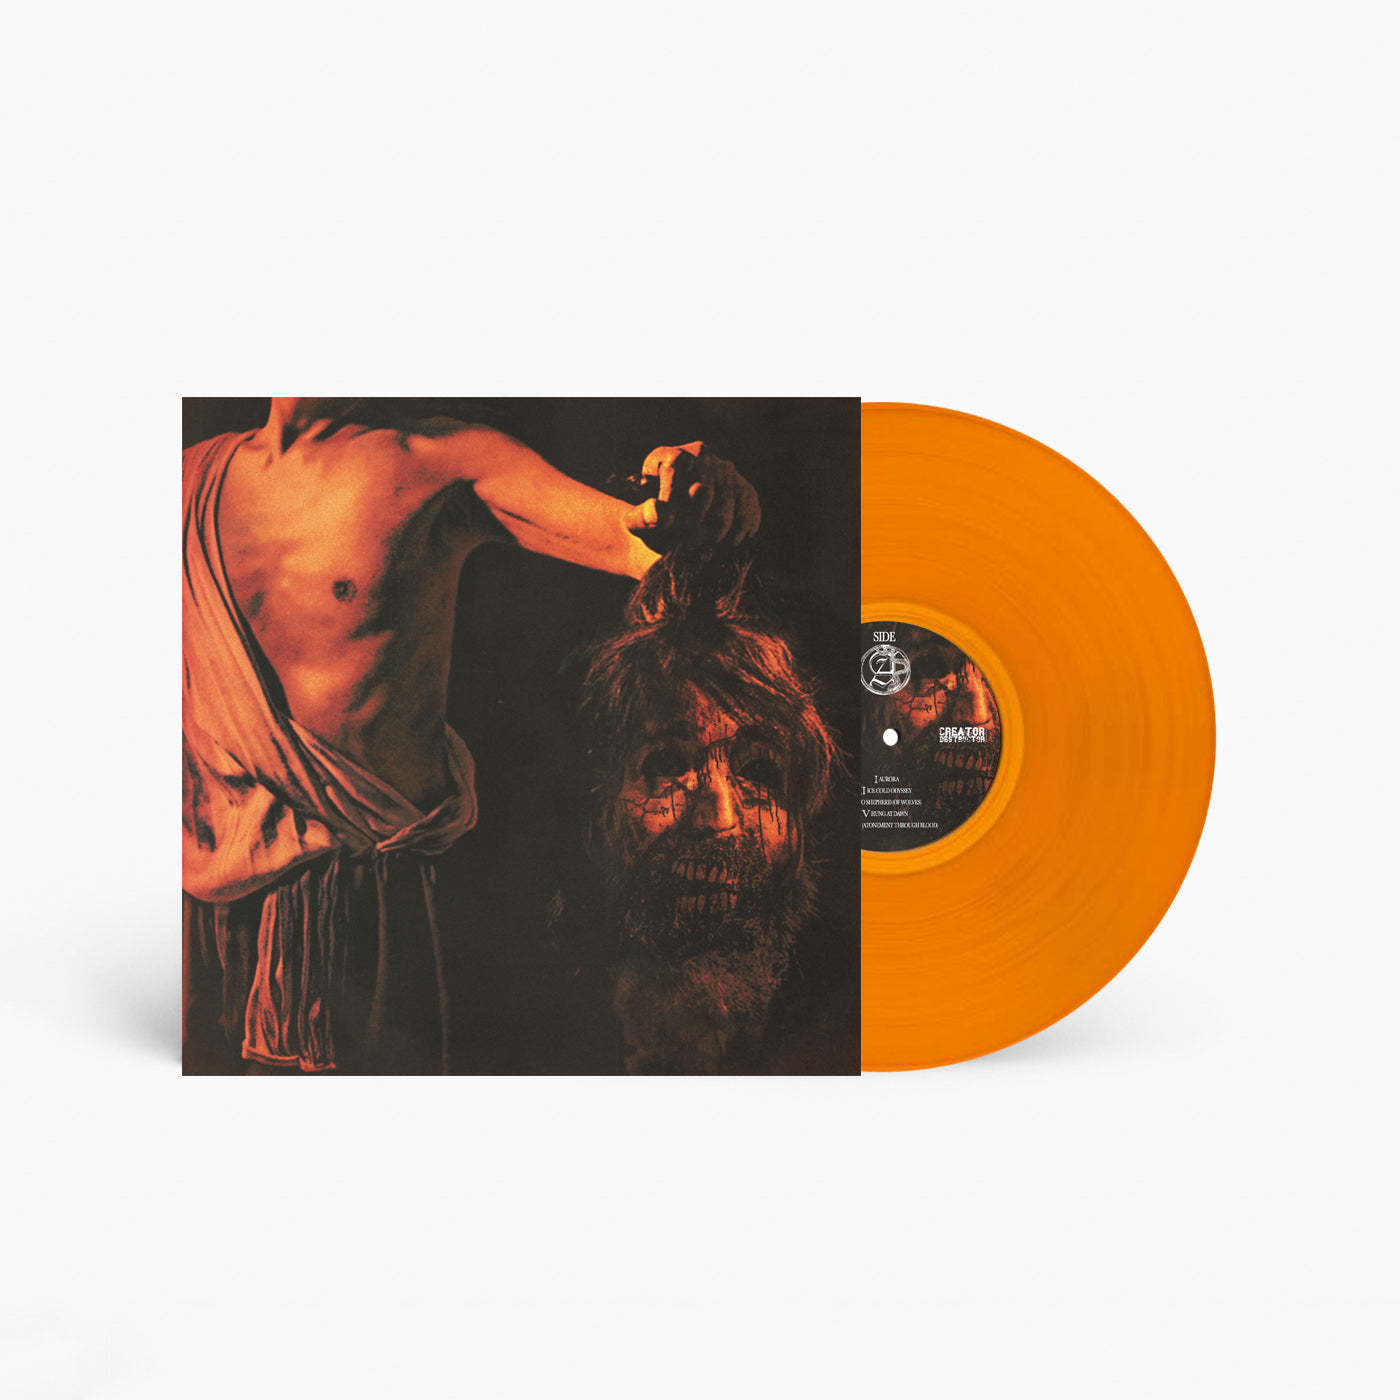 Slowbleed "The Blazing Sun, A Fiery Dawn" LP (Orange Vinyl)